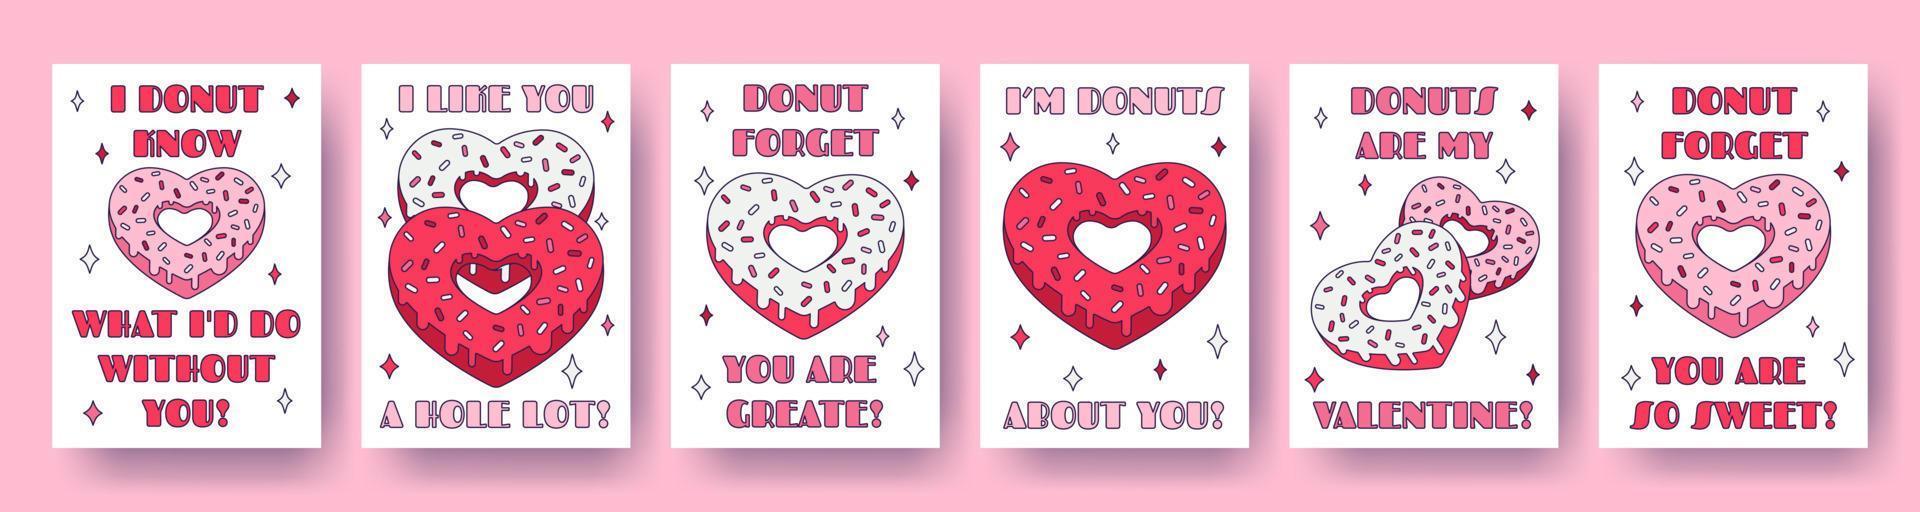 conjunto de tarjetas de corazón de donut del día de san valentín con citas de juego de palabras sobre el amor en estilo retro de dibujos animados. Ilustración de vector de amor para etiquetas de favor, postales, tarjetas de felicitación, carteles o pancartas.